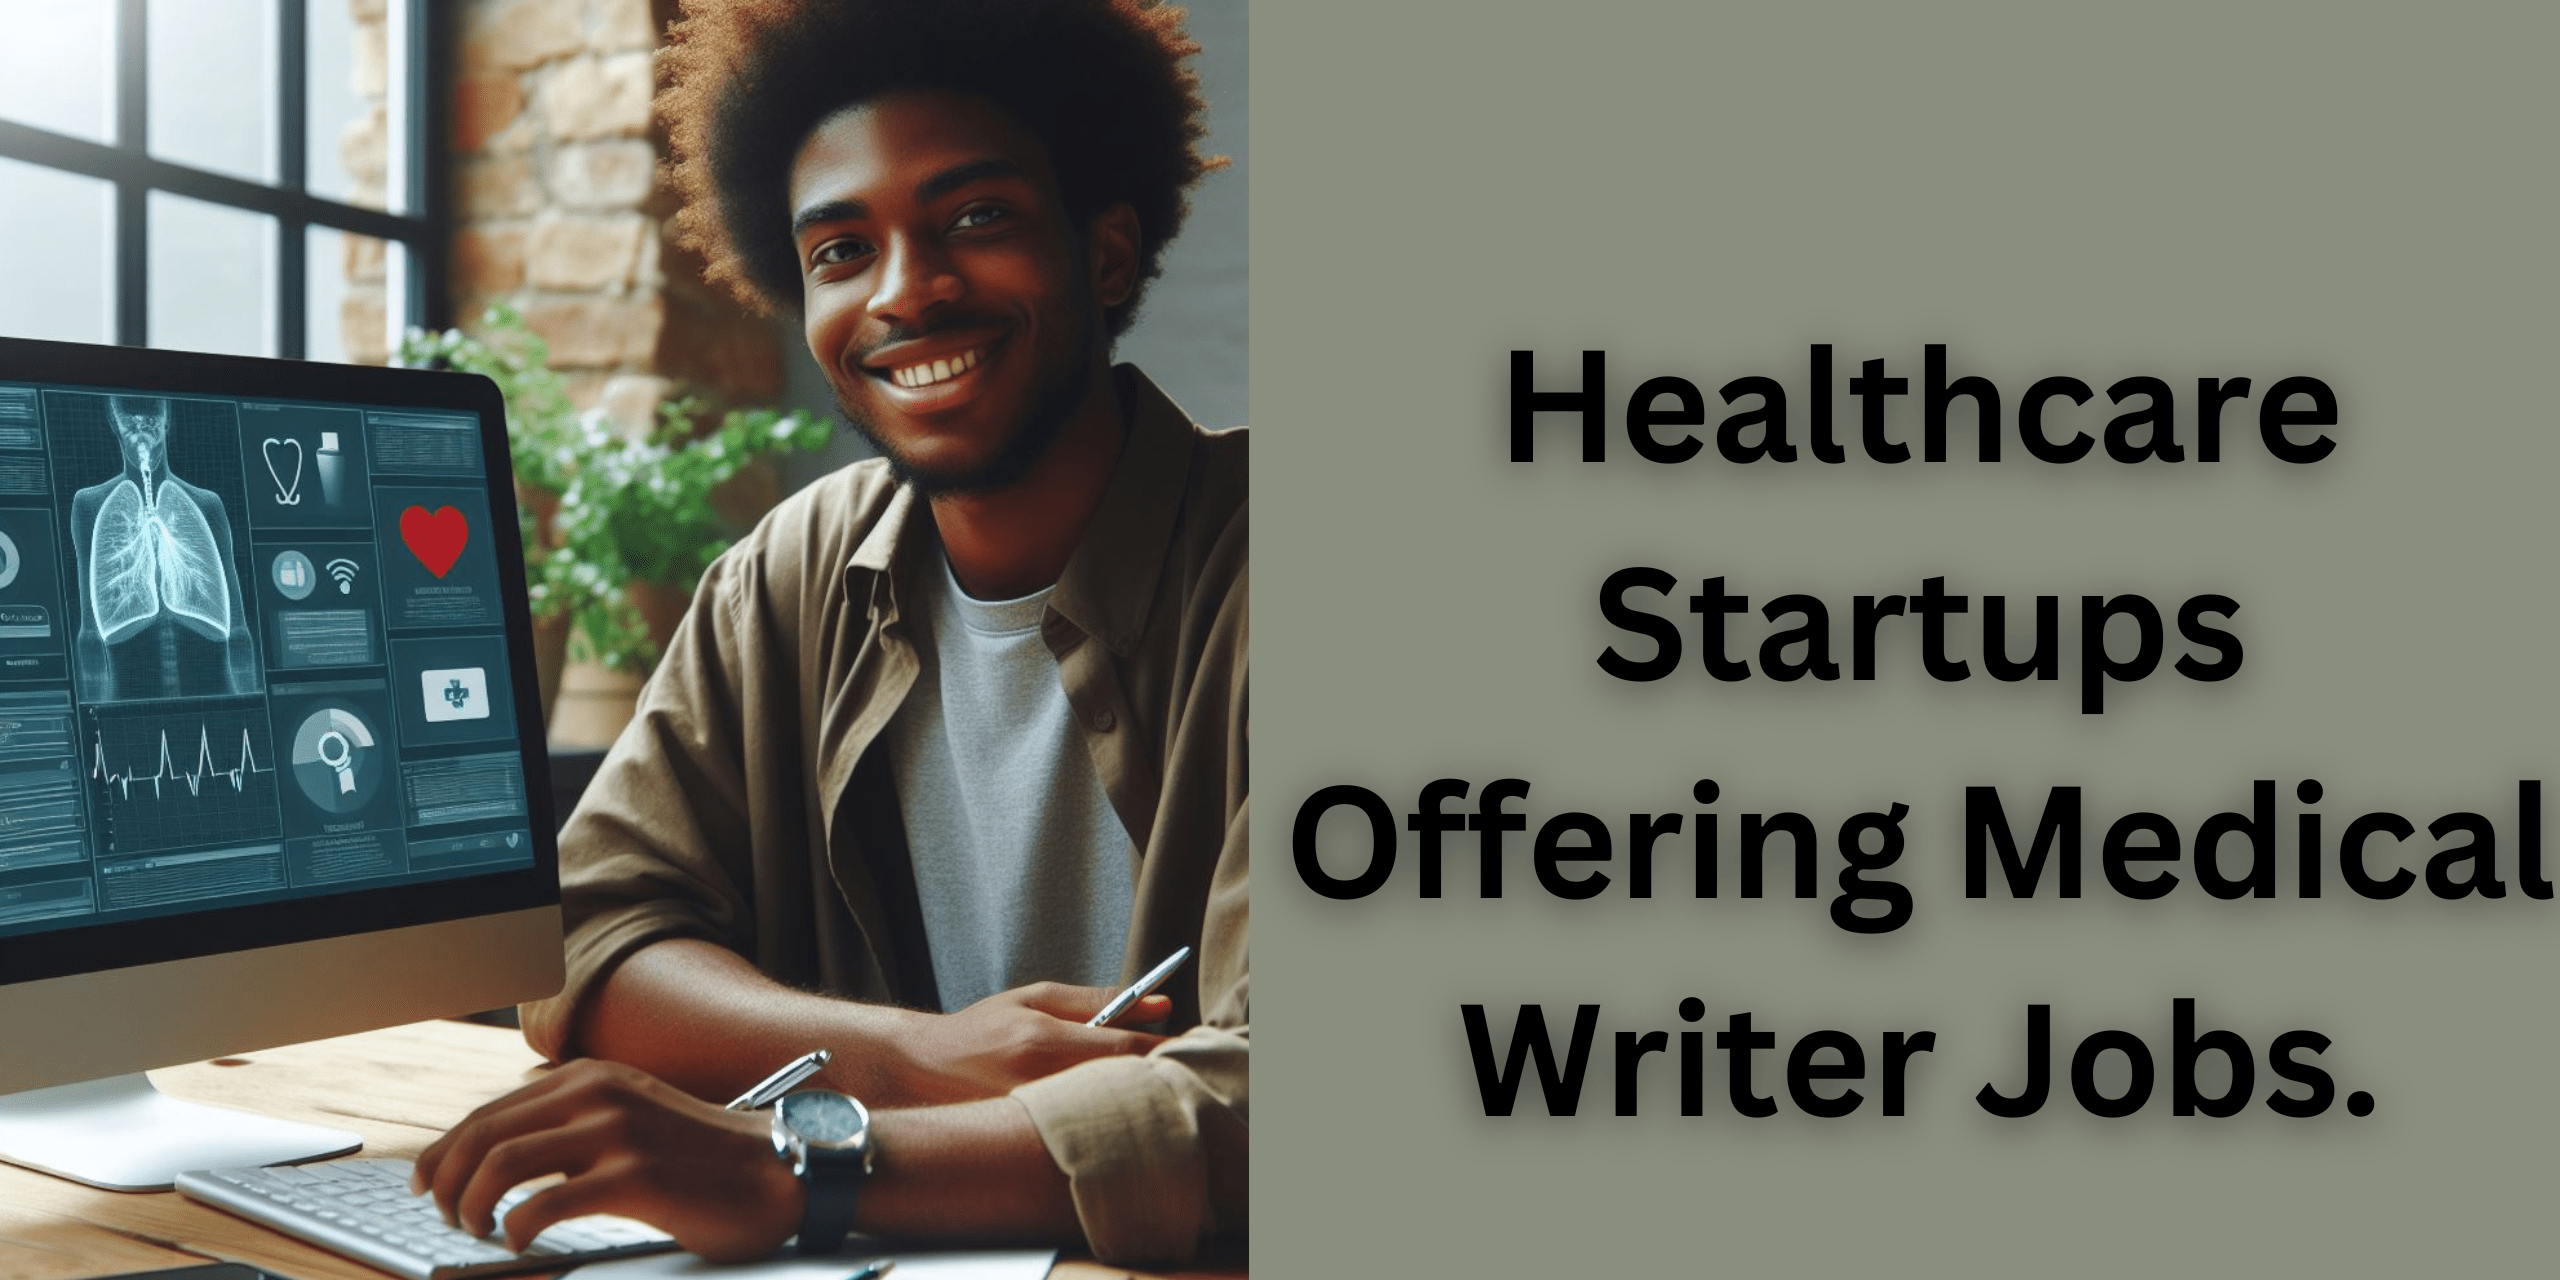 Alt="Health Care Startups Offering Medical Writer Jobs"